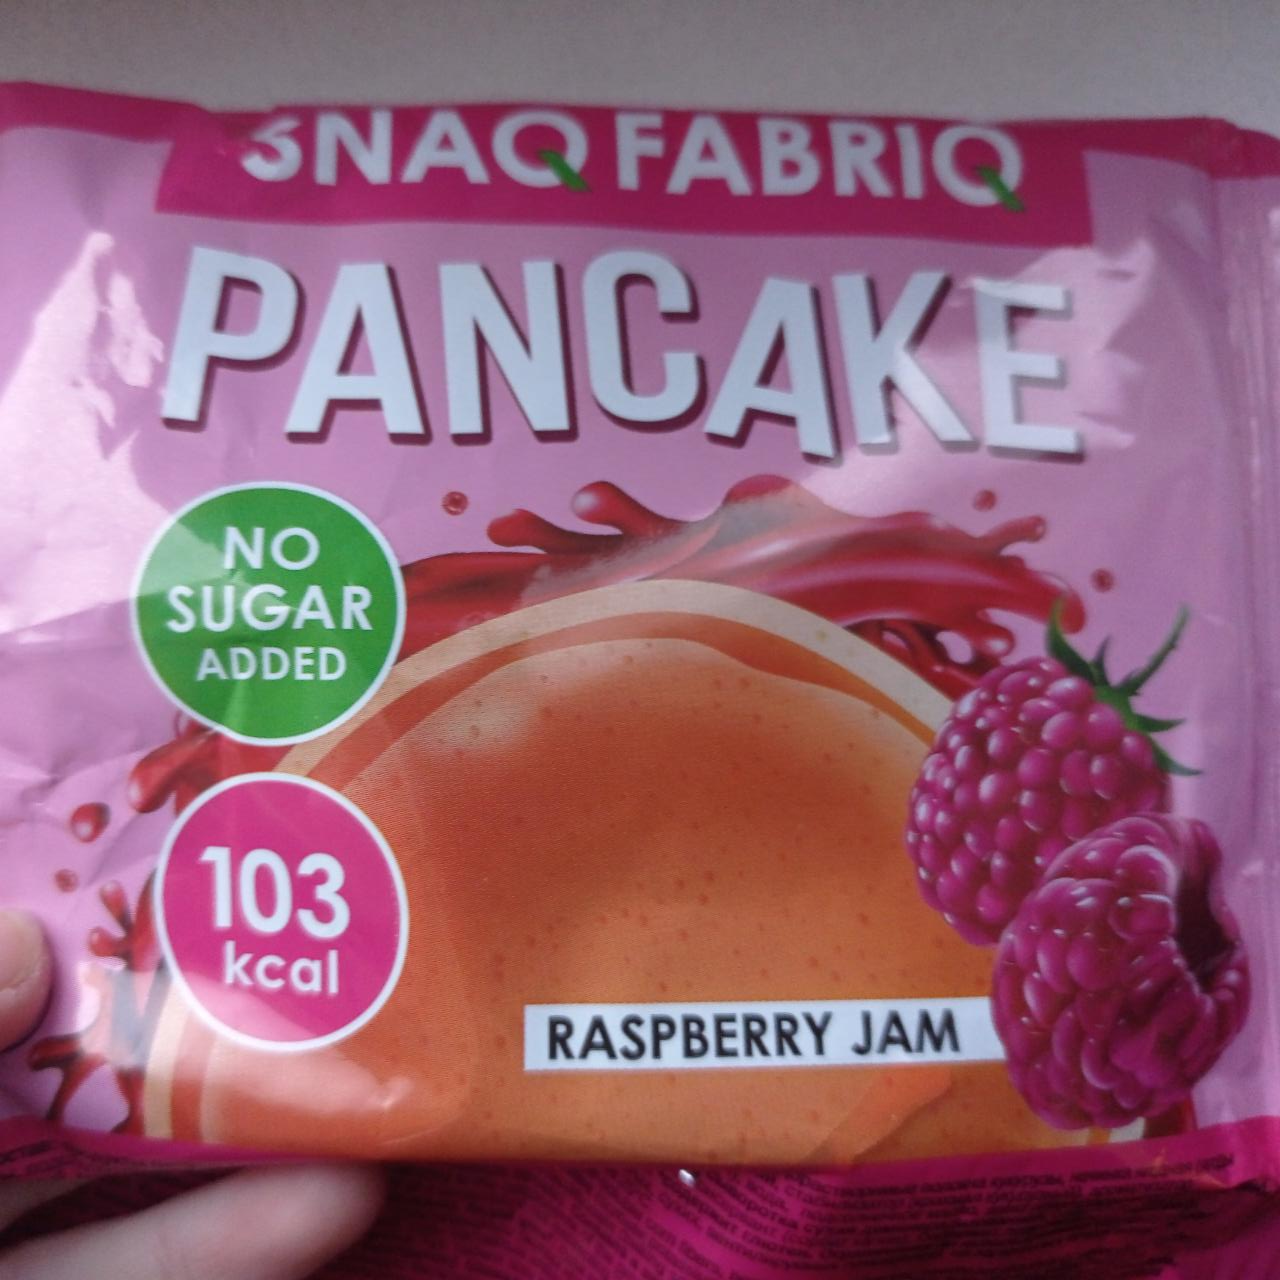 Фото - Панкейк без сахара с начинкой Малиновый джем pancakes Snaq Fabriq